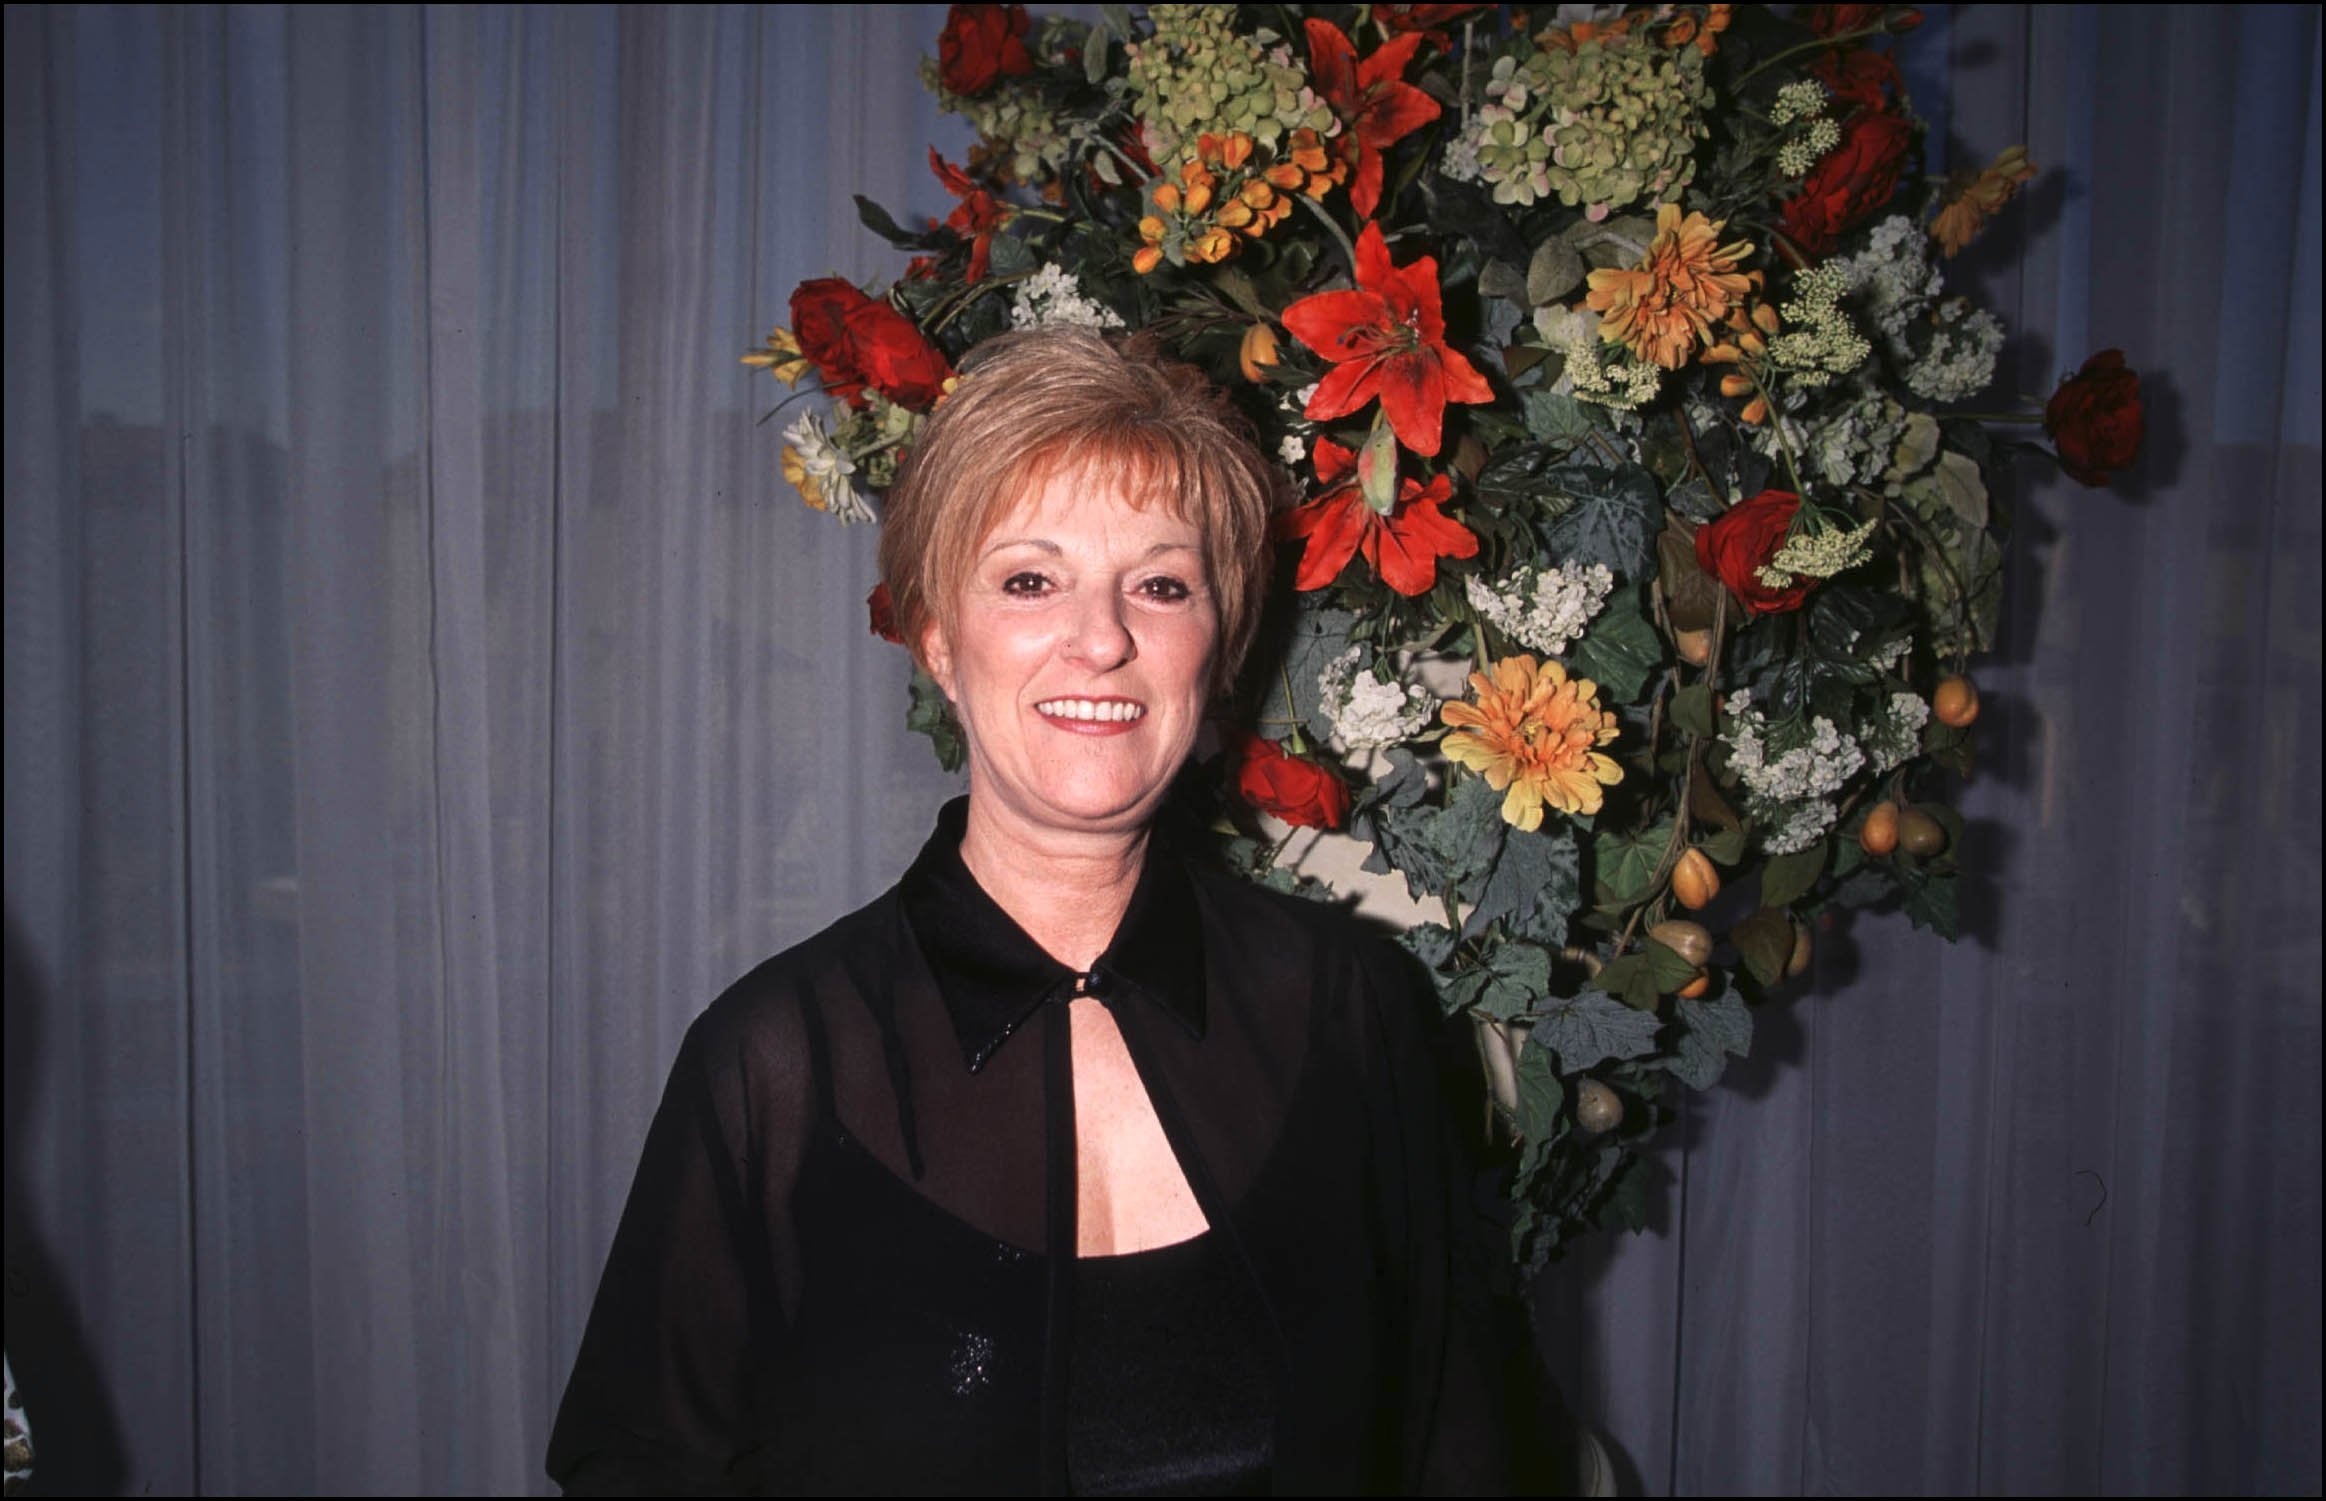 Claudette Dion en la cena de la Fundación Achille-Tangauy "Maman Dion", en Canadá, el 14 de mayo de 2001. | Foto: Getty Images